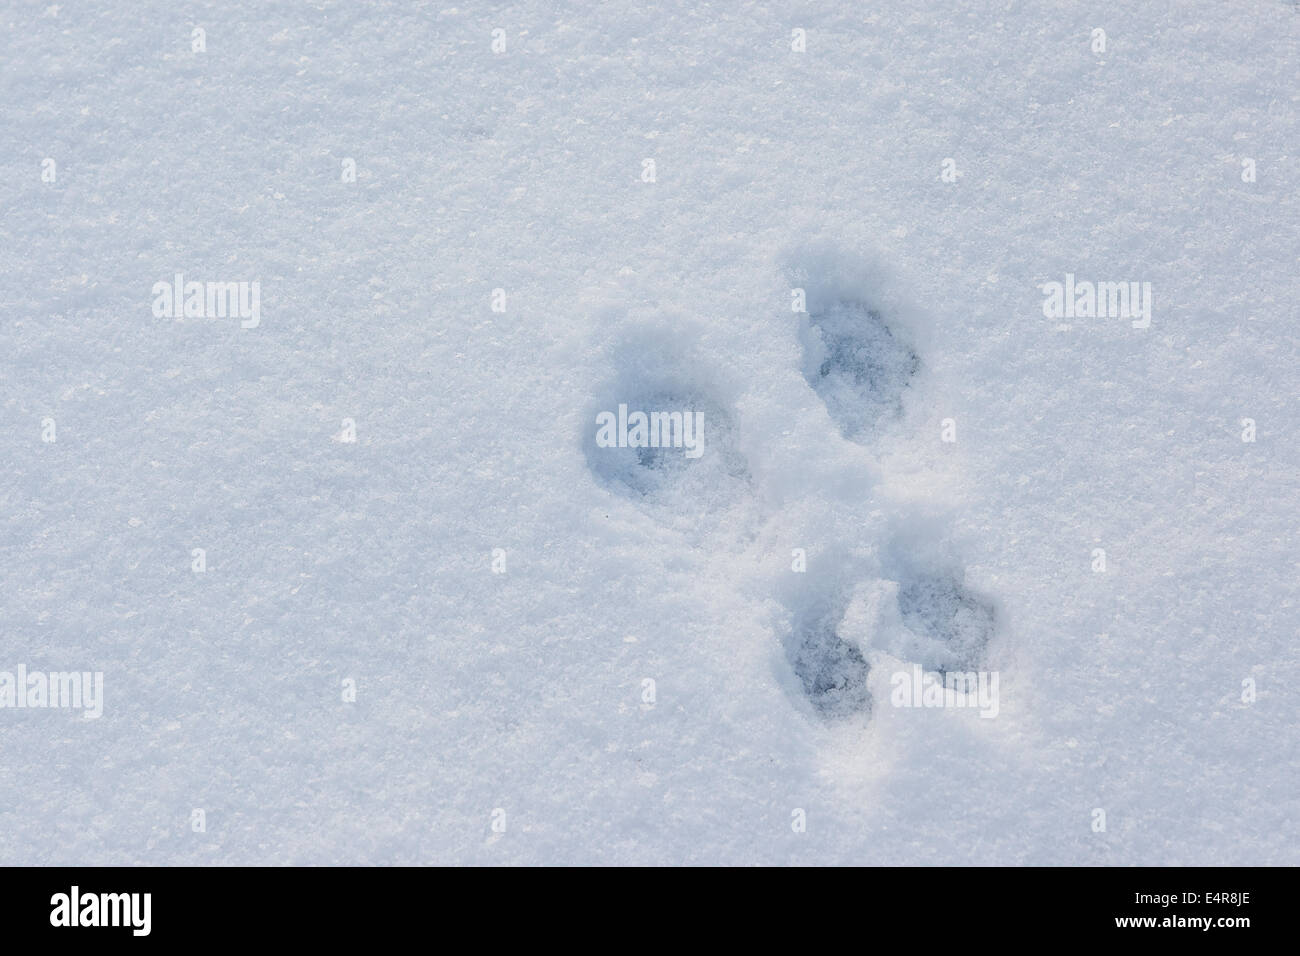 Scoiattolo rosso, Eurasian scoiattolo rosso via nella neve, Eichhörnchen, Sperone, Schnee, Trittsiegel, Sciurus vulgaris, Écureuil d'Europa Foto Stock